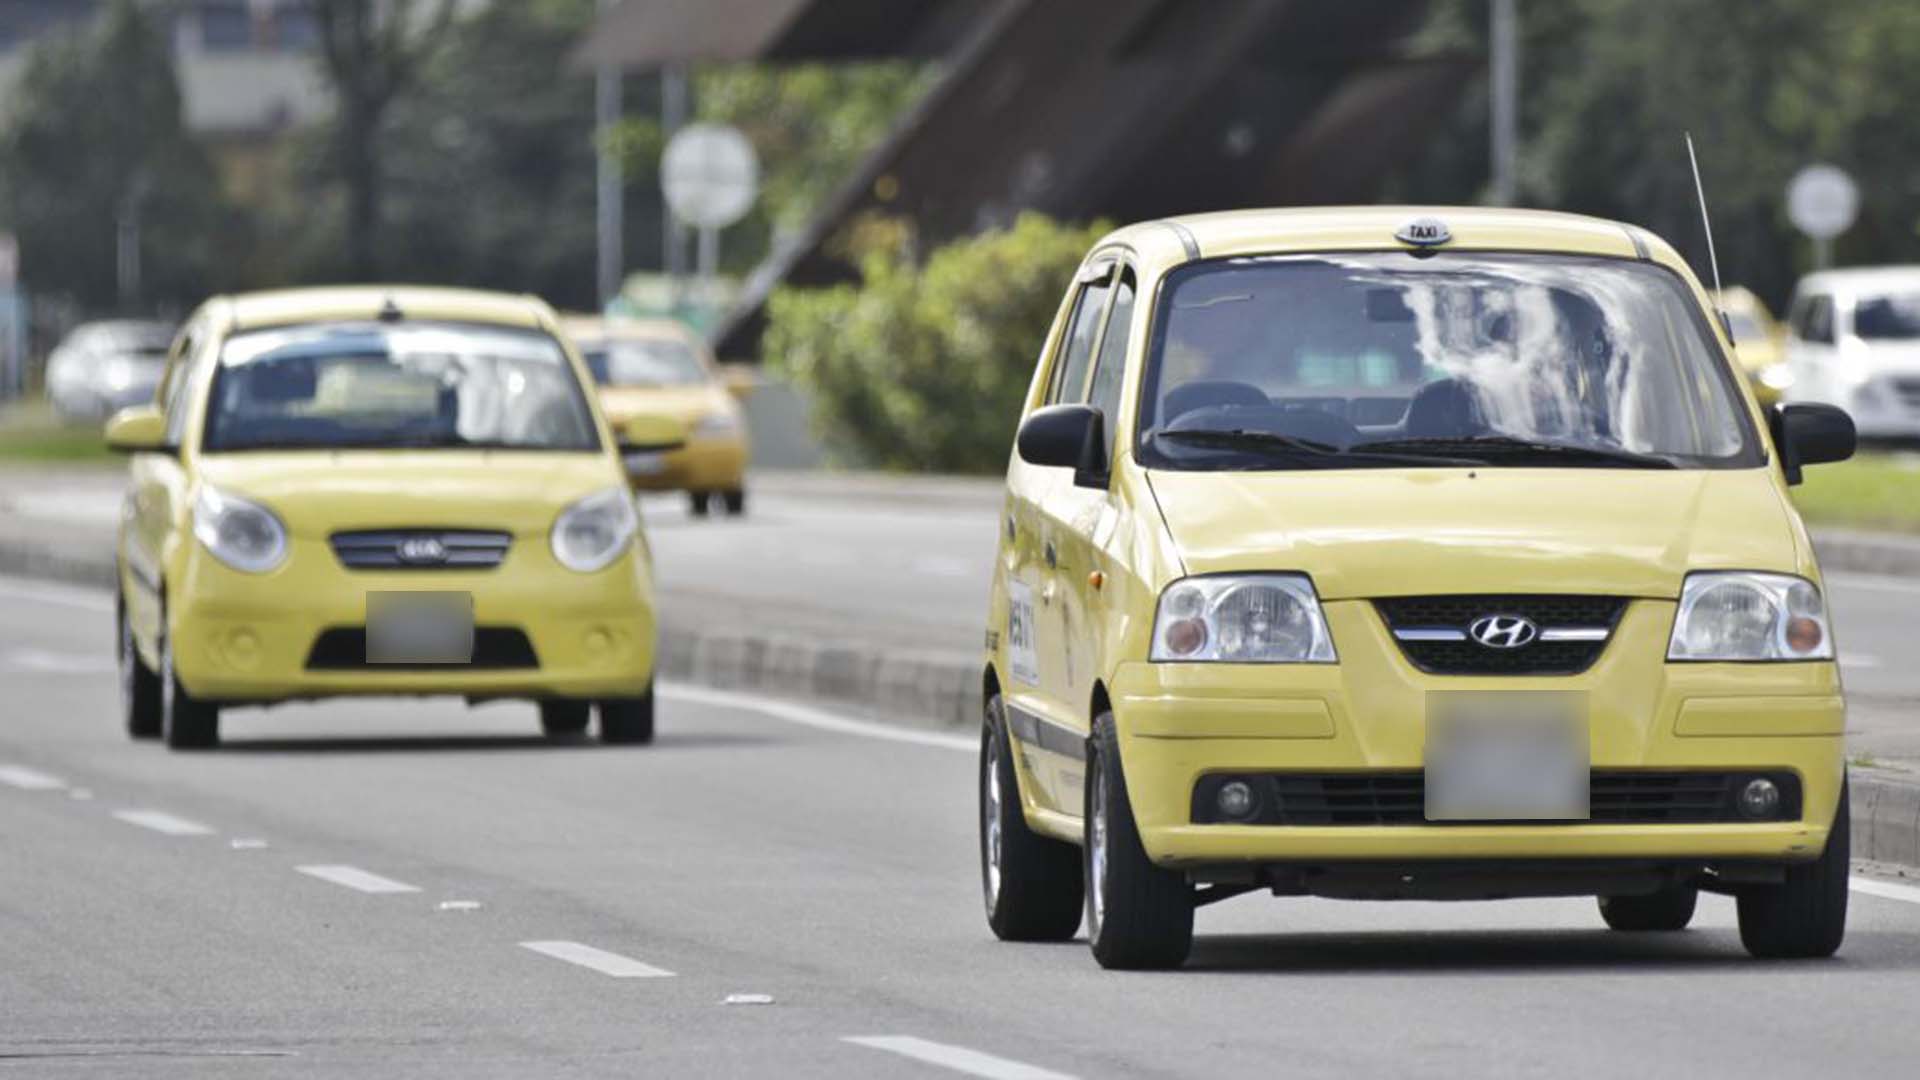 Imagen de referencia de un taxi en la ciudad de Bogotá